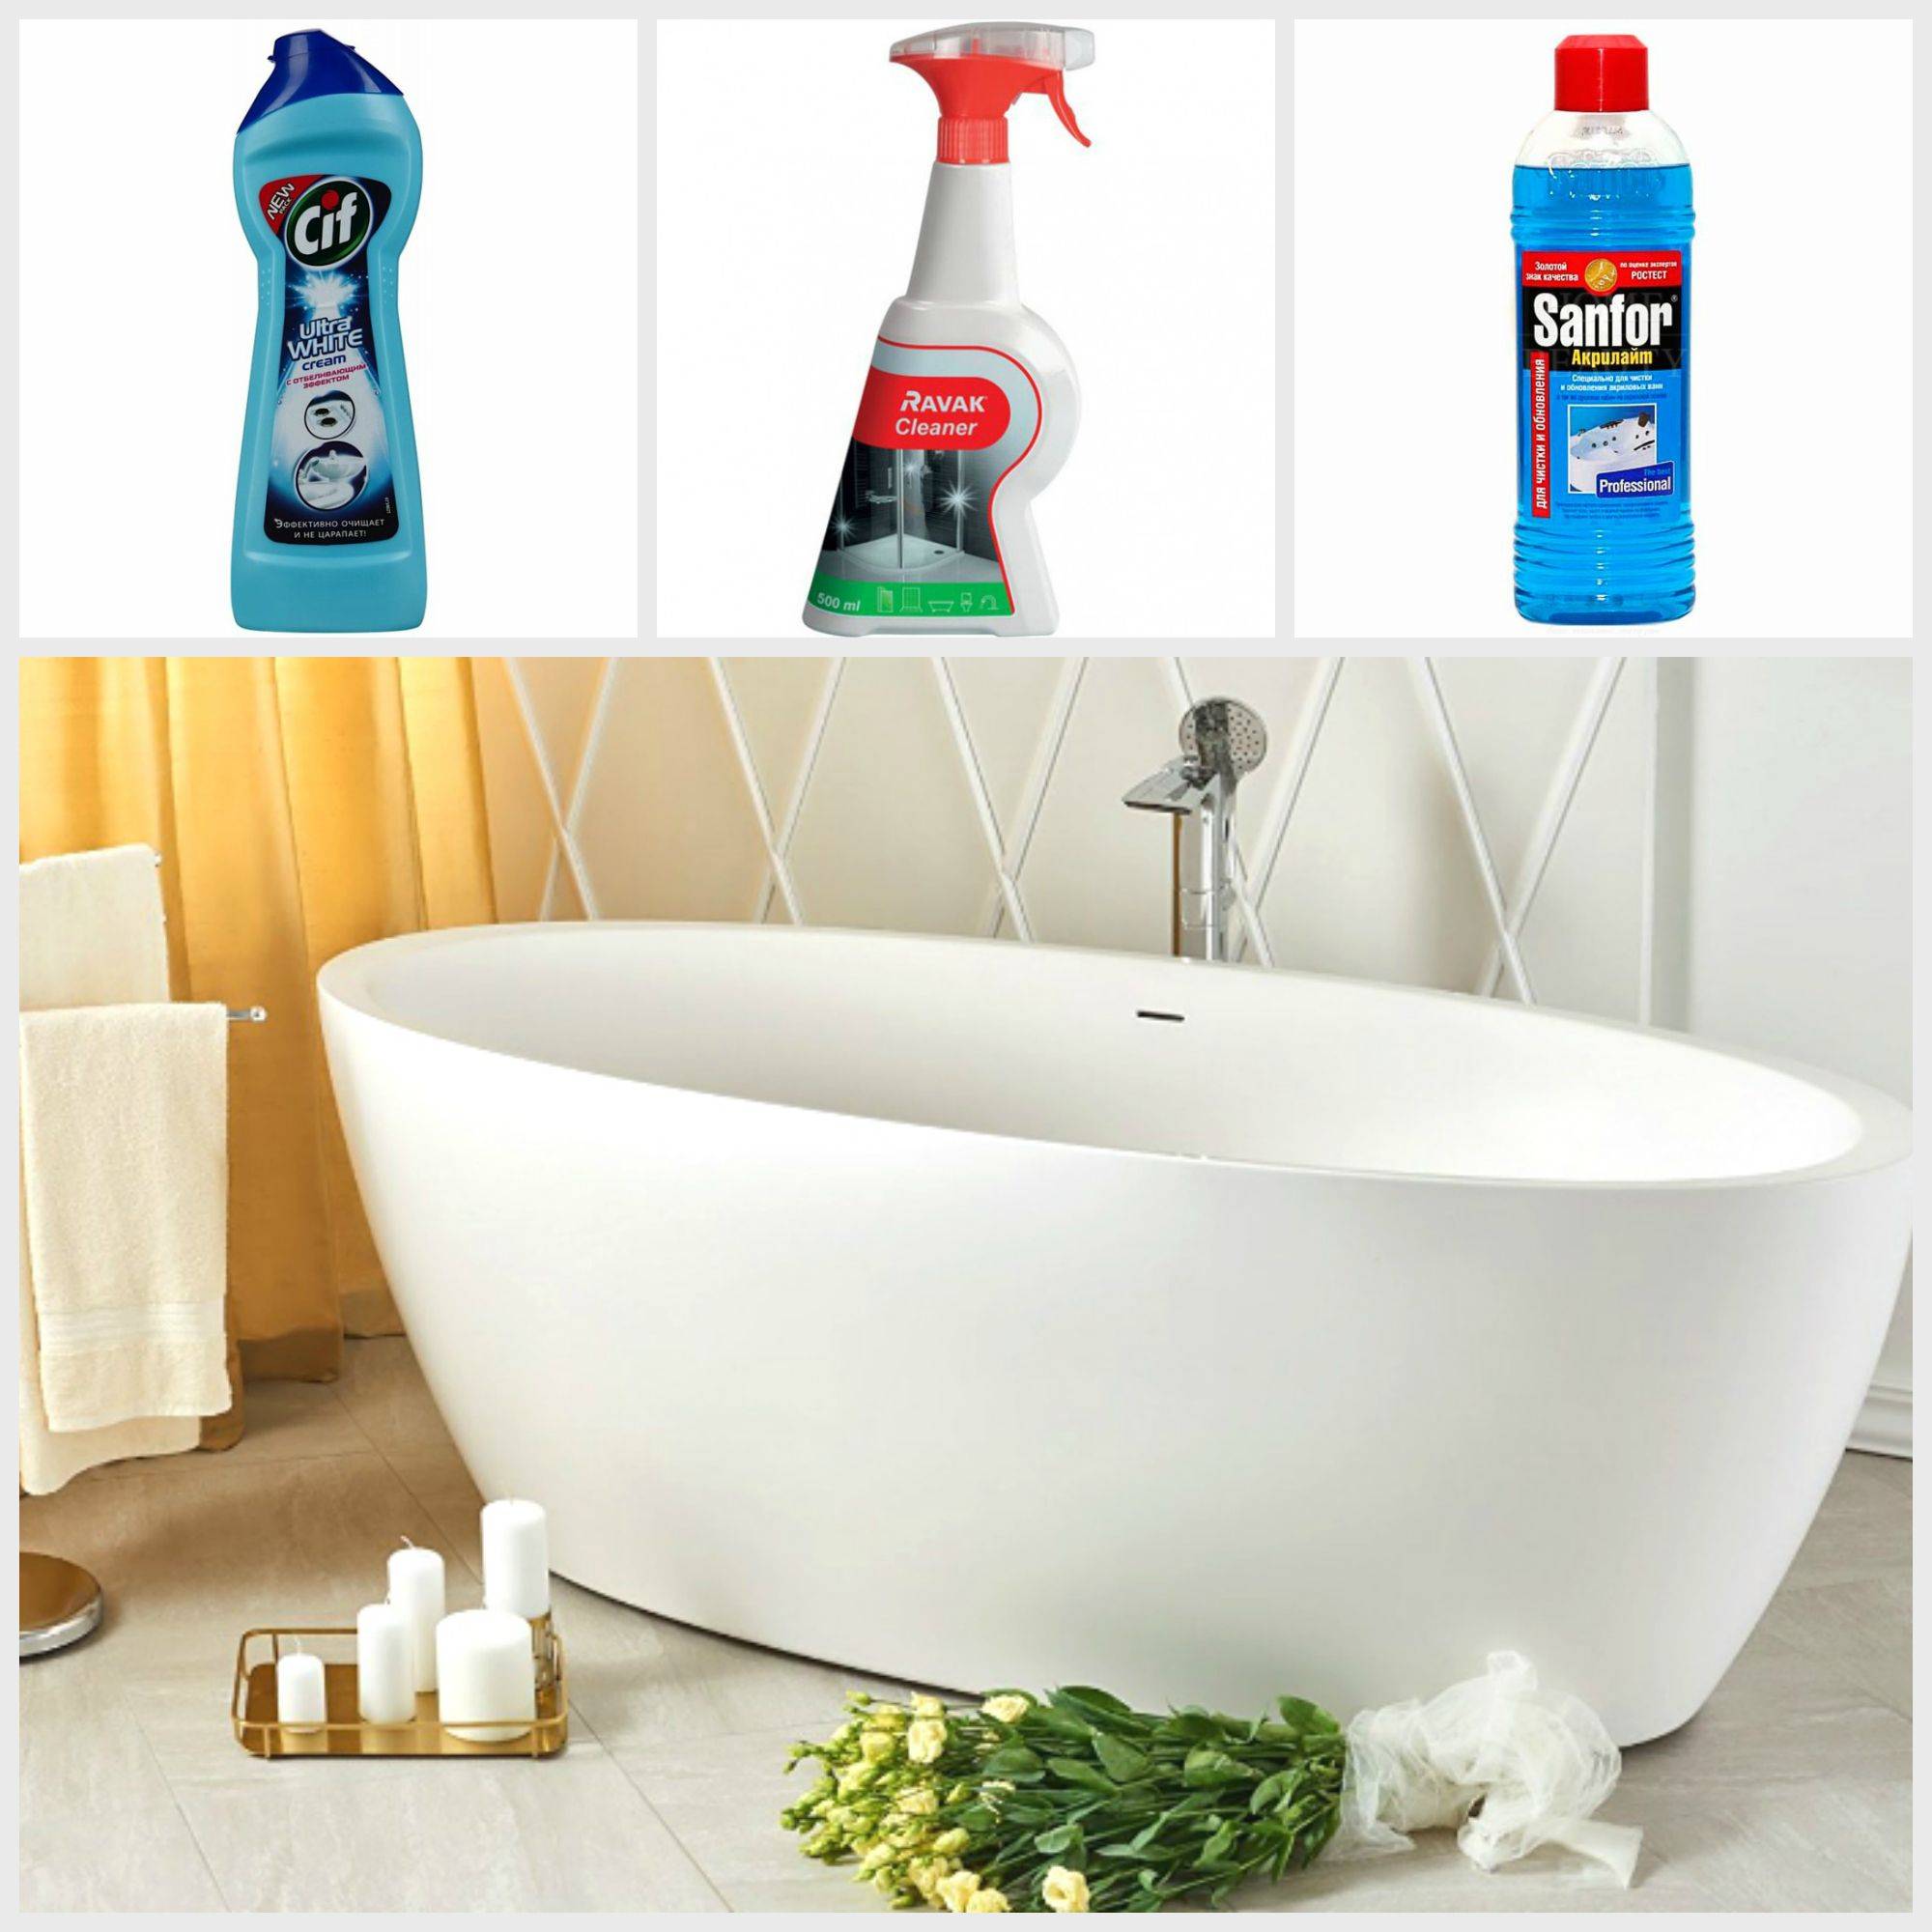 Чистка акриловых ванн в домашних условиях, рекомендации по уходу за ней, использование бытовой химии и народные средства